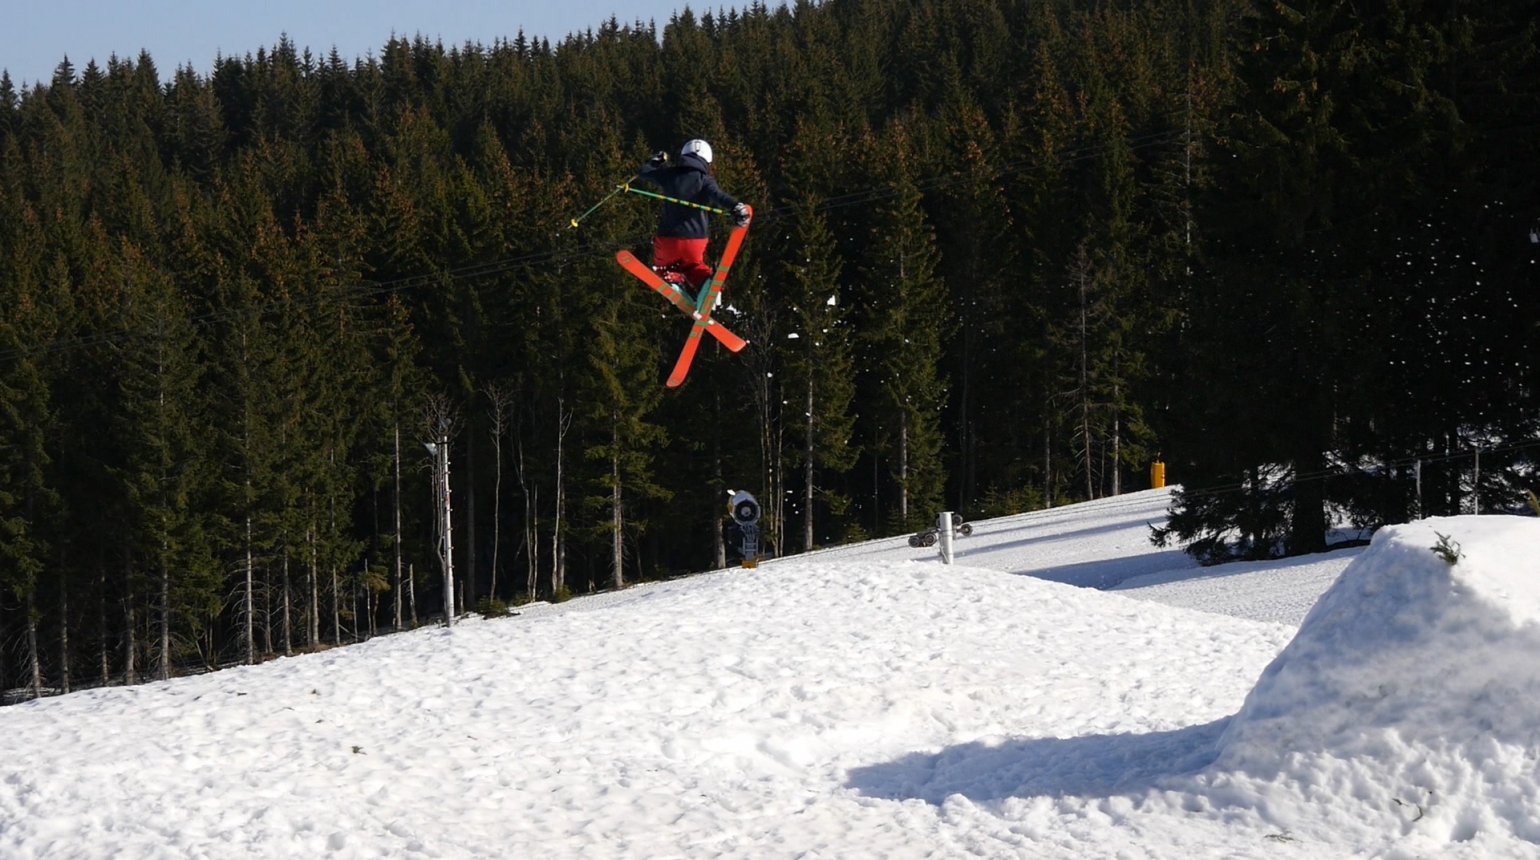 Freestyle lyžaři hodnotí sezonu a chystají přípravu na tu nadcházející. V zahraničí i v novém domácím areálu